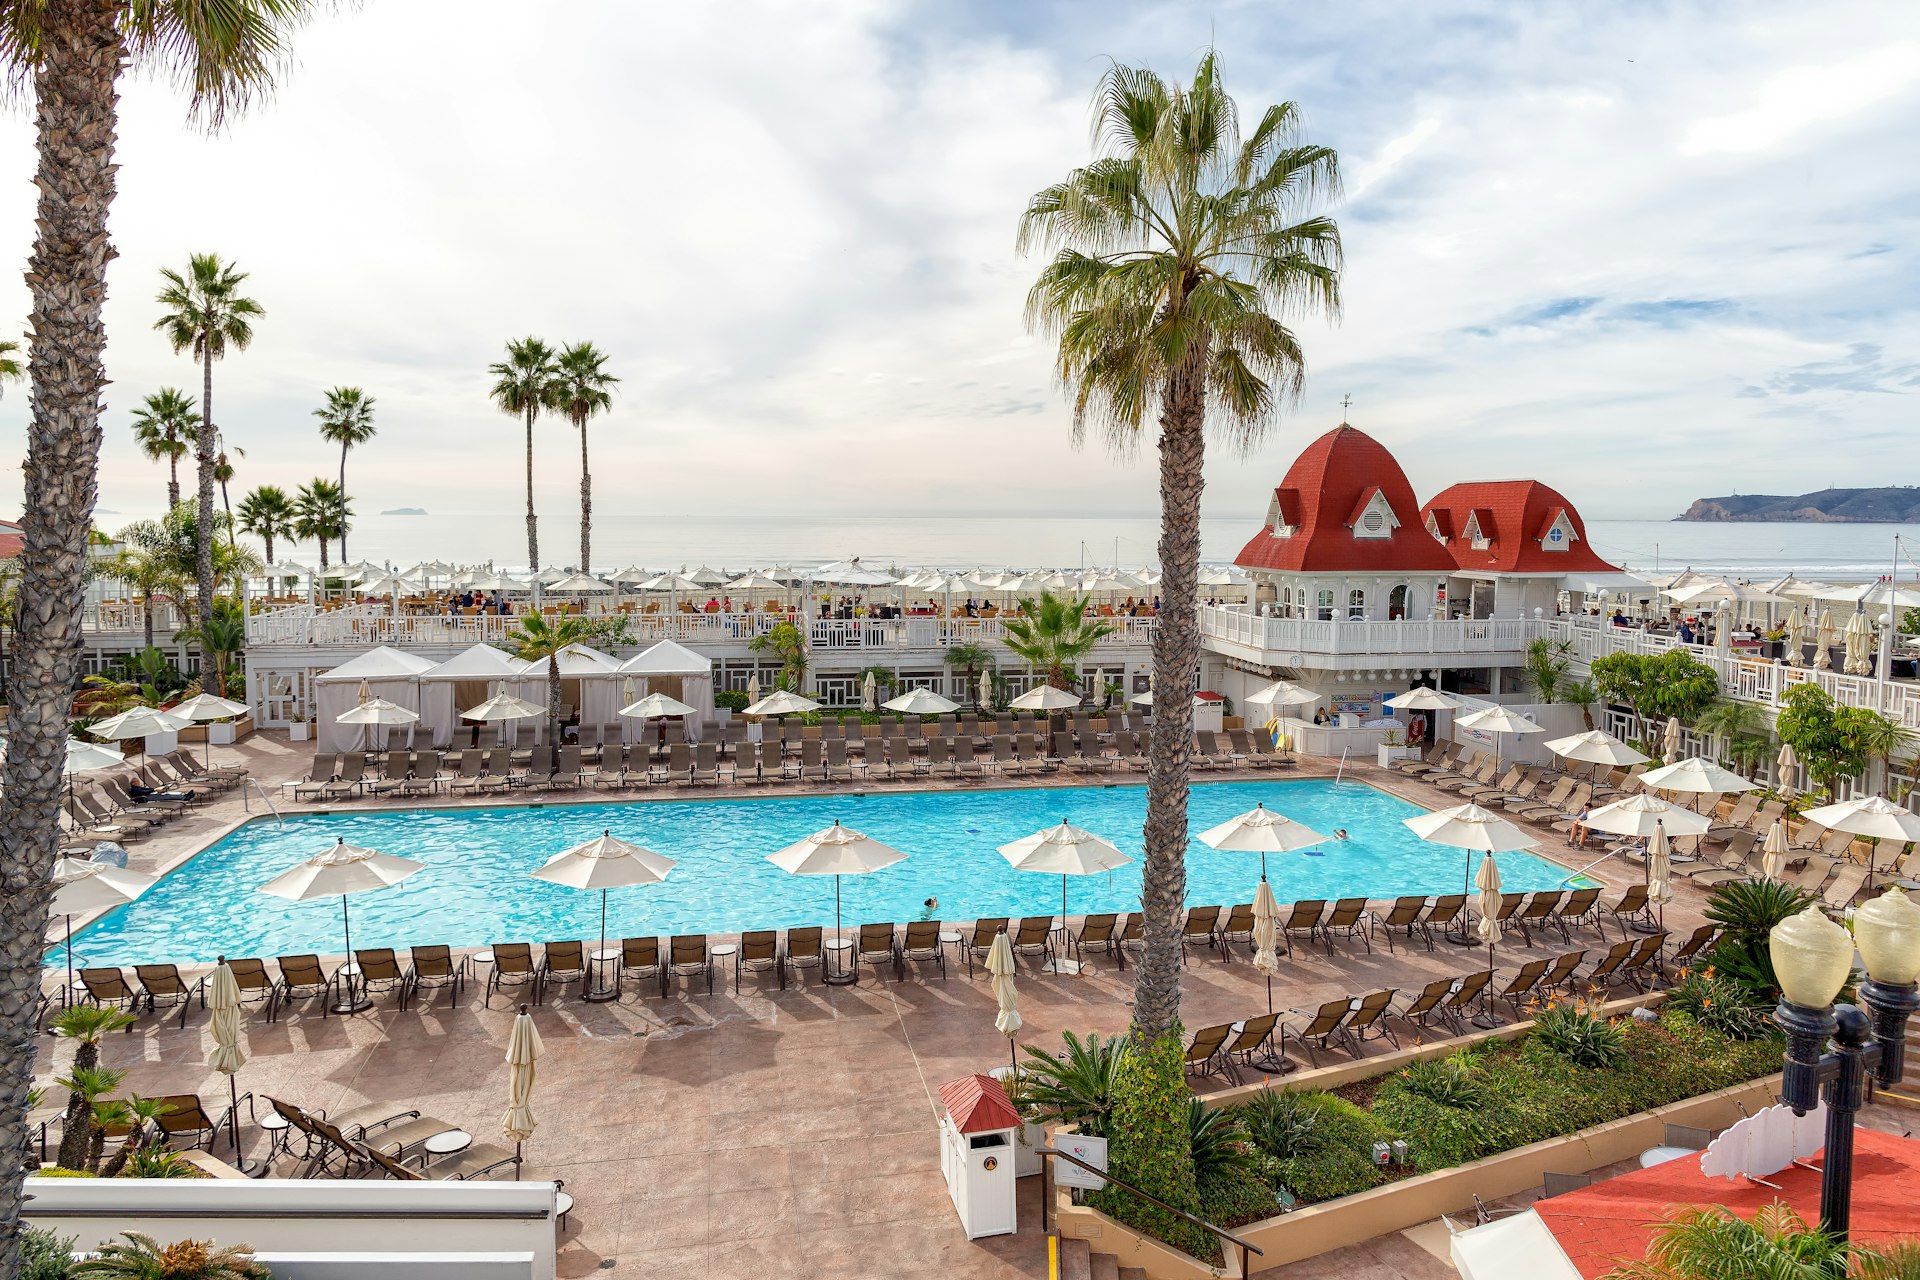 500px Photo ID: 72866245 - The historic Hotel del Coronado, San Diego, California